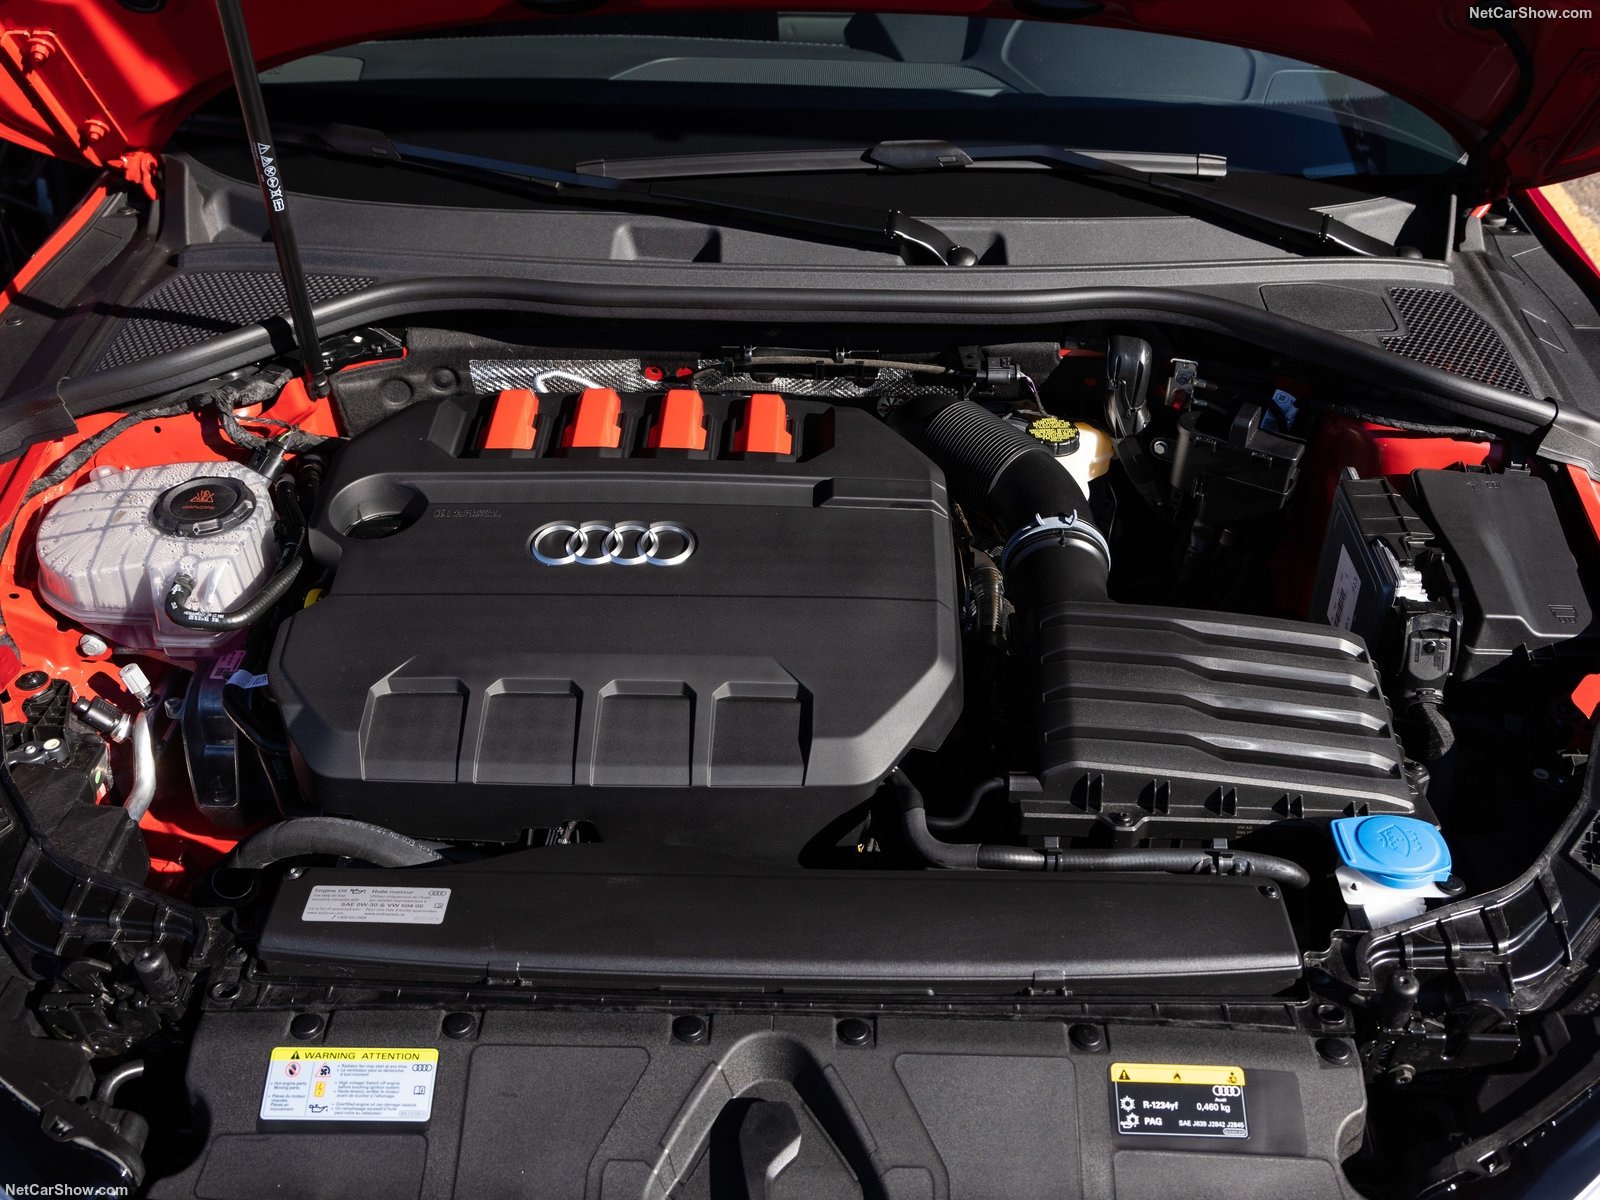 Audi S3 Engine